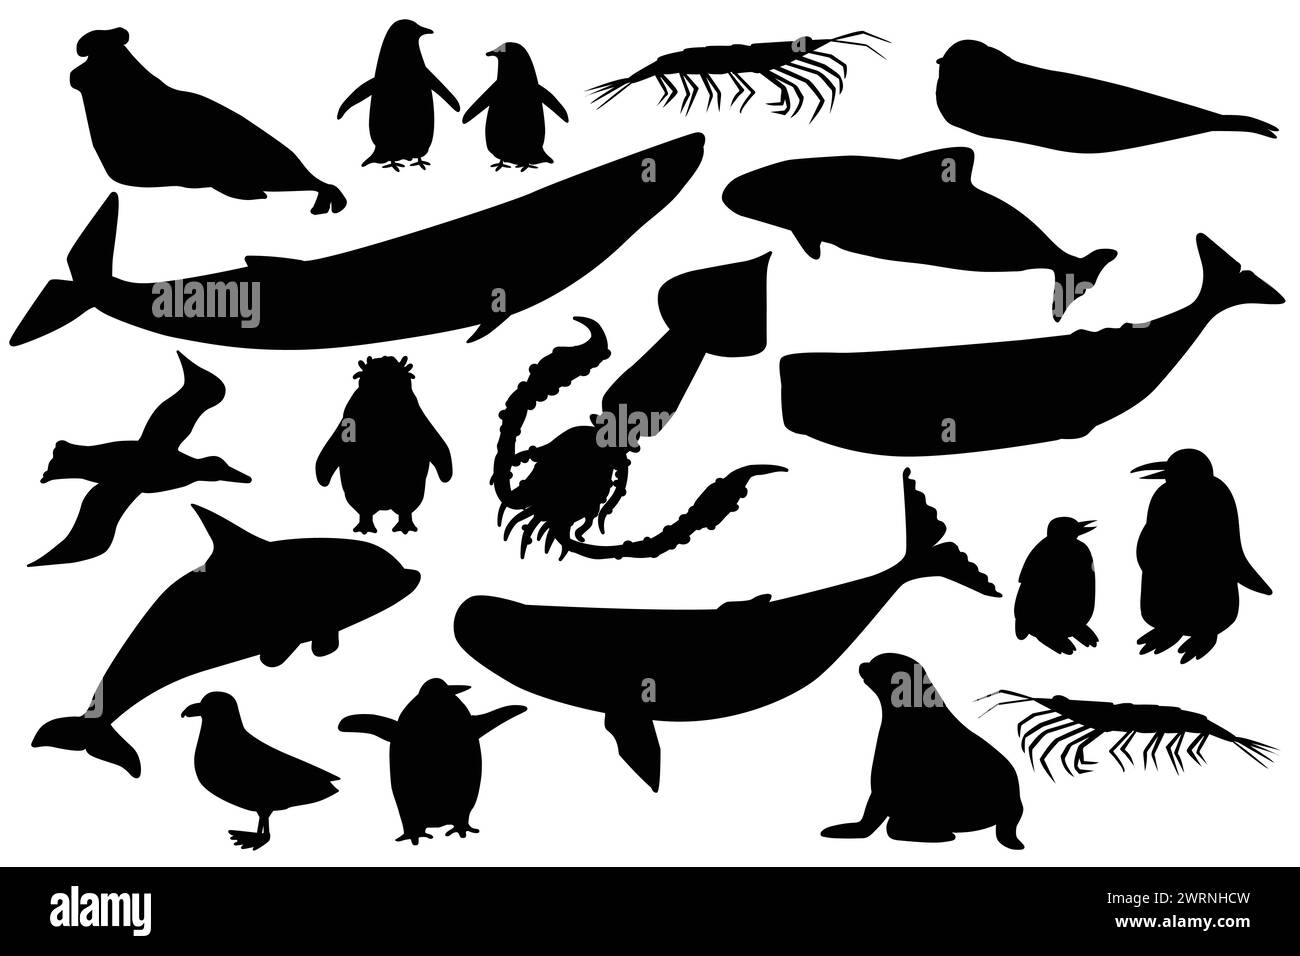 Ensemble noir de forme silhouette de vecteur d'animaux en Antarctique. Collection dessinée à la main de baleines, pingouins, skua, krill, phoques, marsouin. Illustration de Vecteur